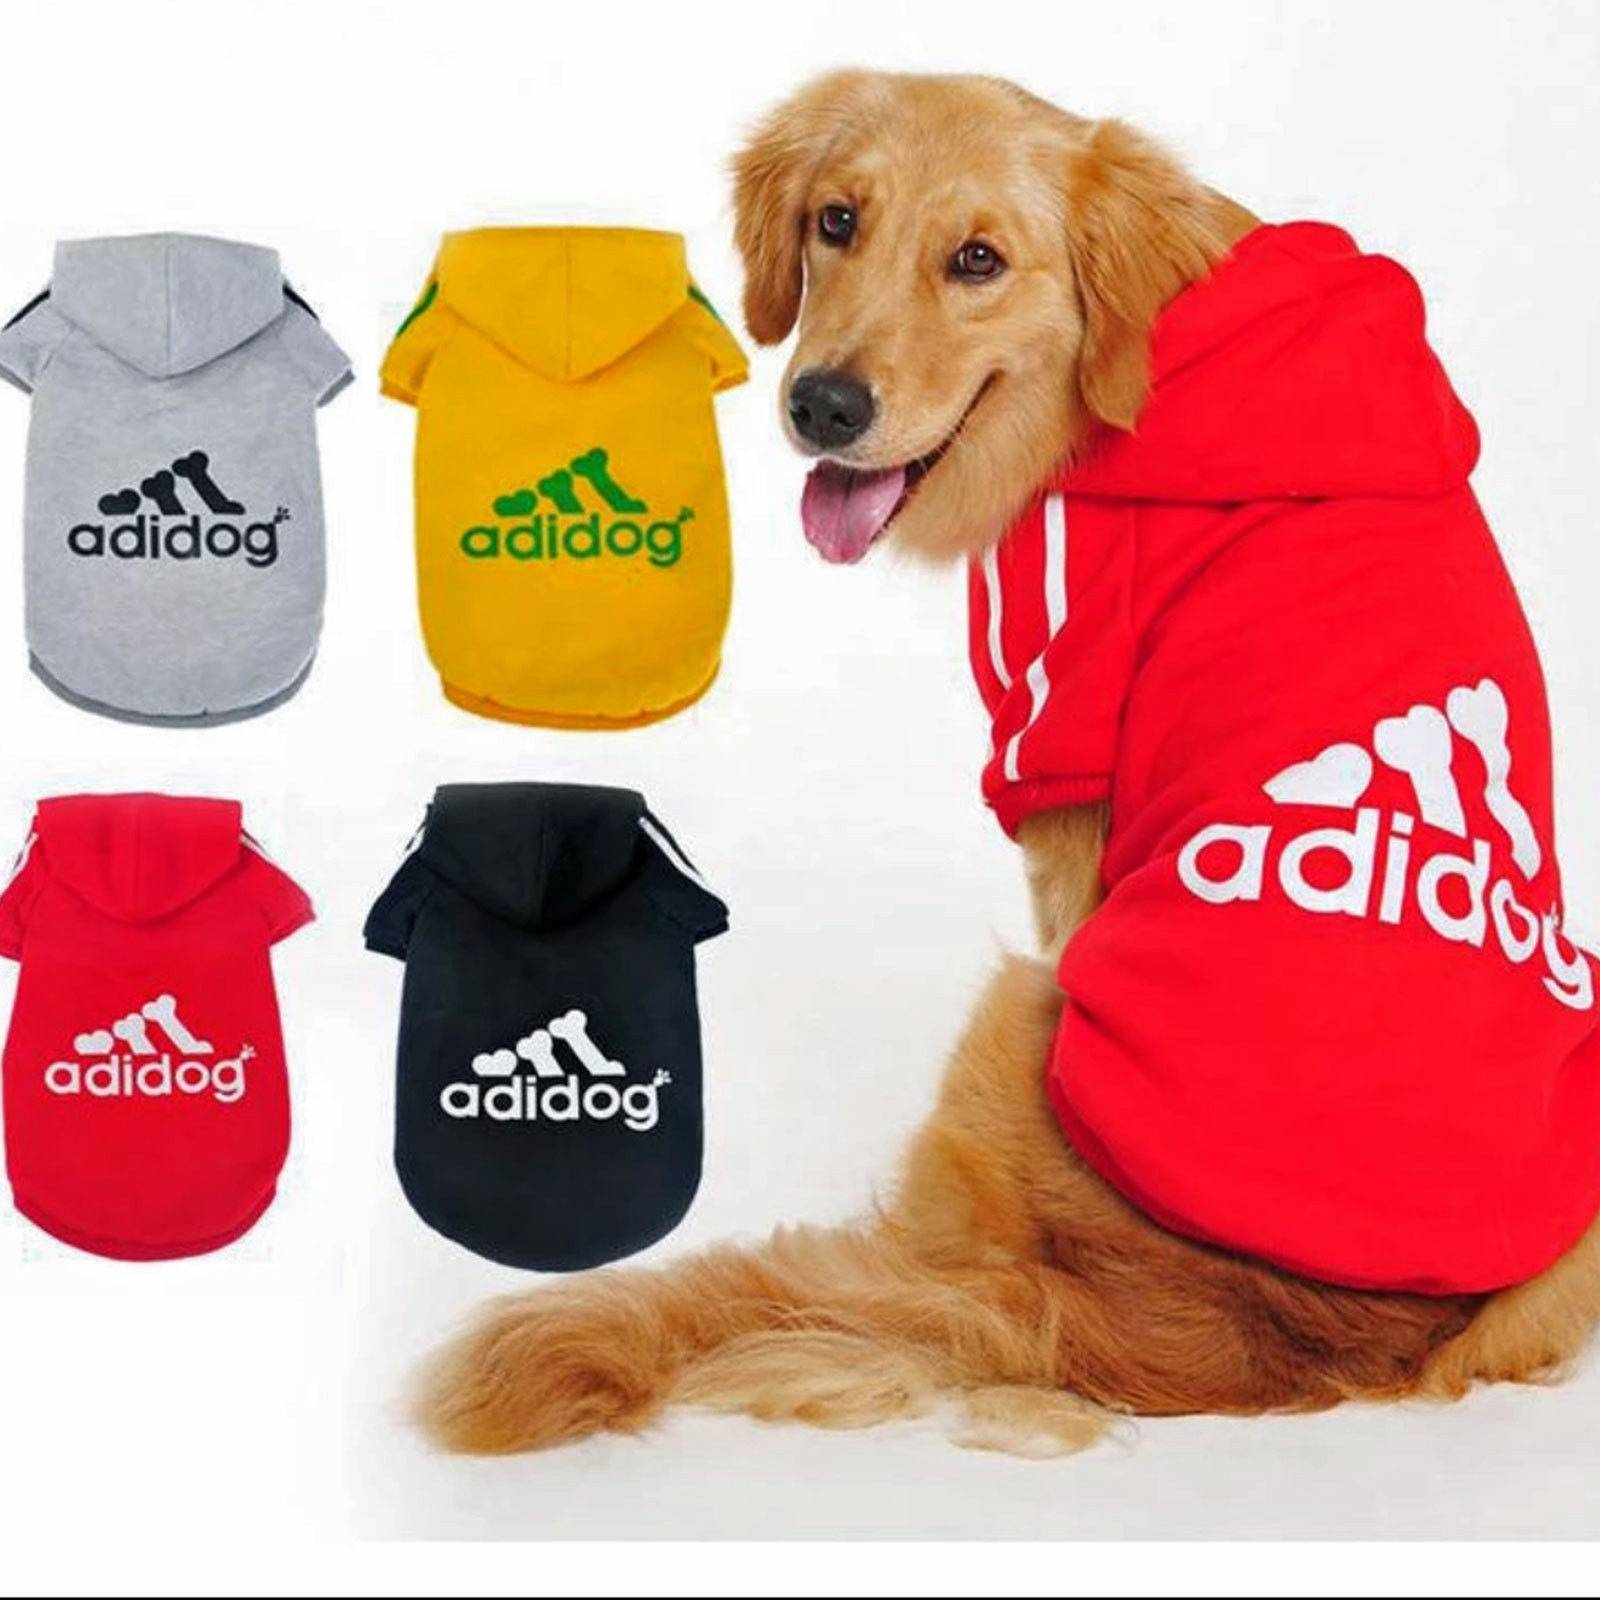 Одежда для собак, что предпочитают покупать владельцы своим любимцам